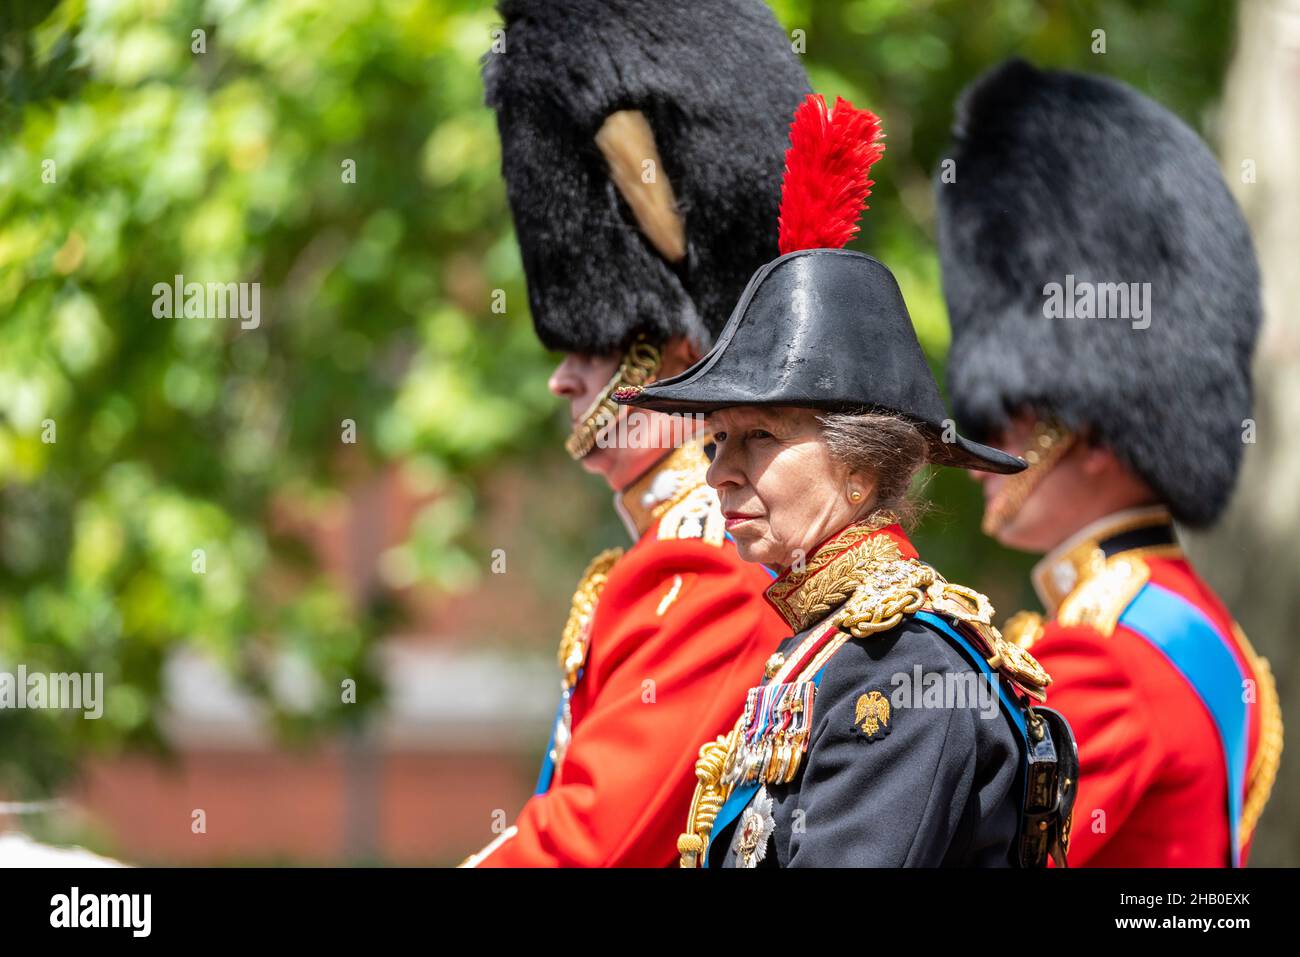 Princesse Anne.Anne, Princesse Royale en uniforme de cérémonie militaire lors de Trooping The Color 2019, Londres, Angleterre, Royaume-Uni Banque D'Images